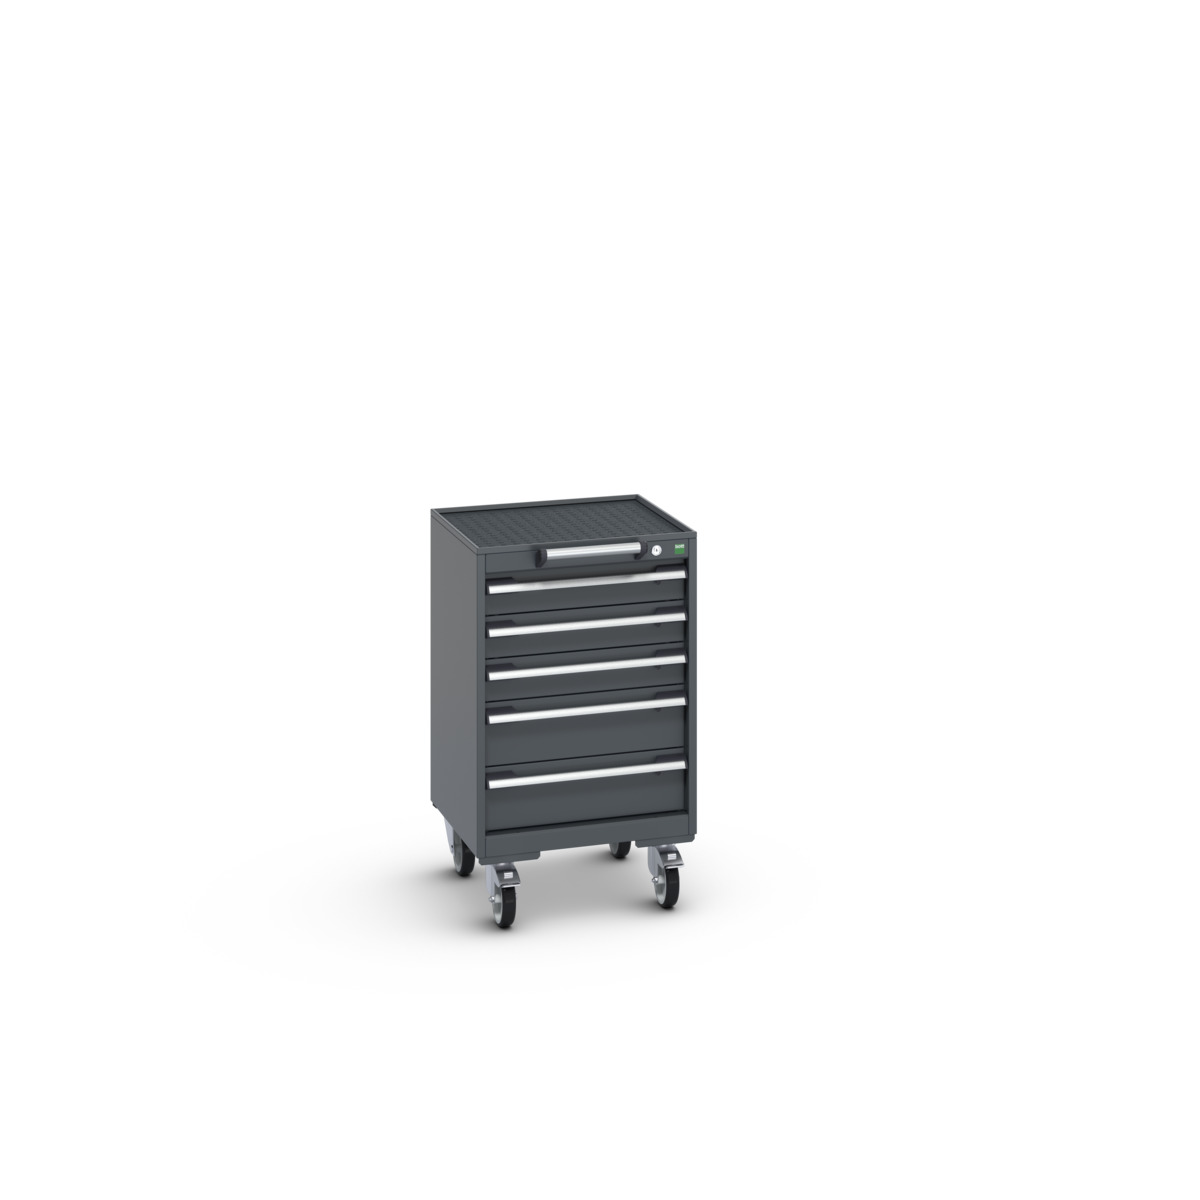 40402132.77V - cubio mobile cabinet